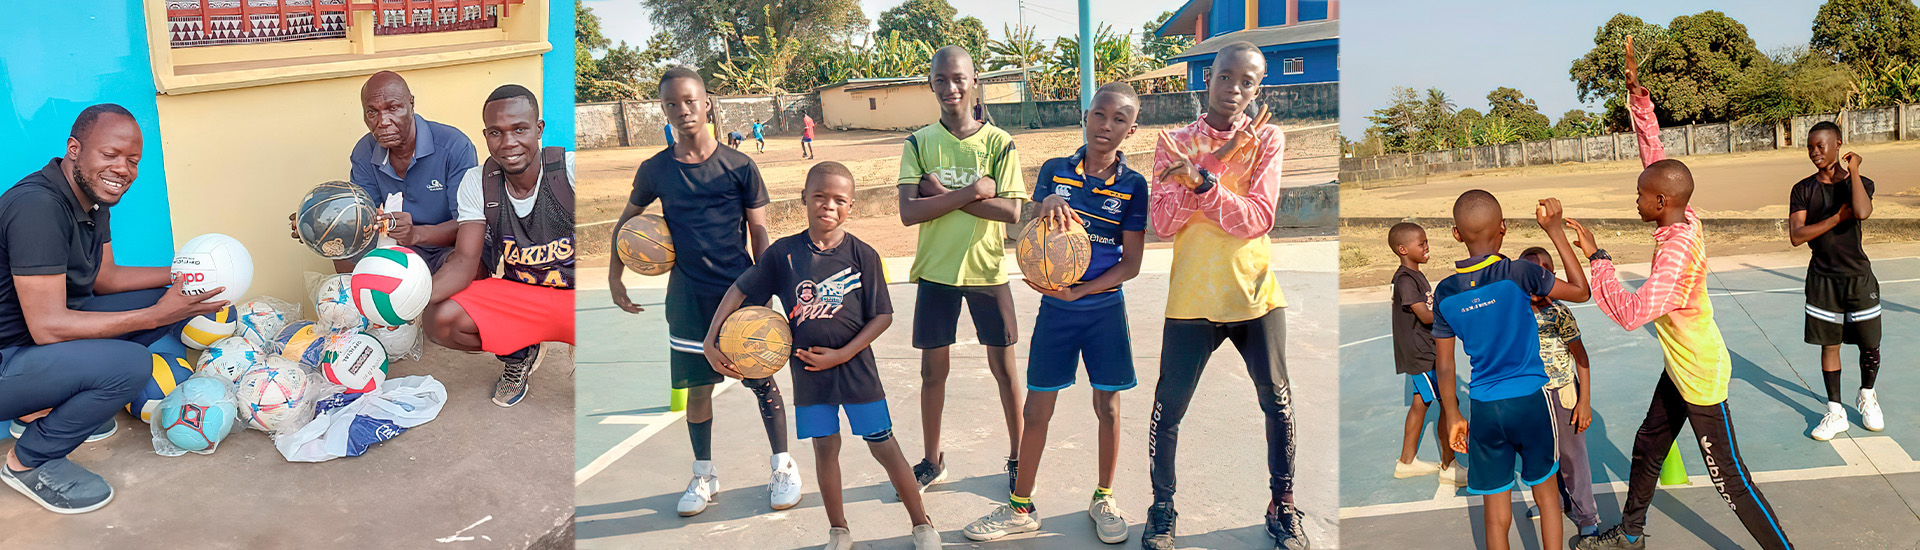 Deporte, nutrición y salud en la escuela sociodeportiva Don Bosco Lungi (Sierra Leona) con la Fundación Real Madrid